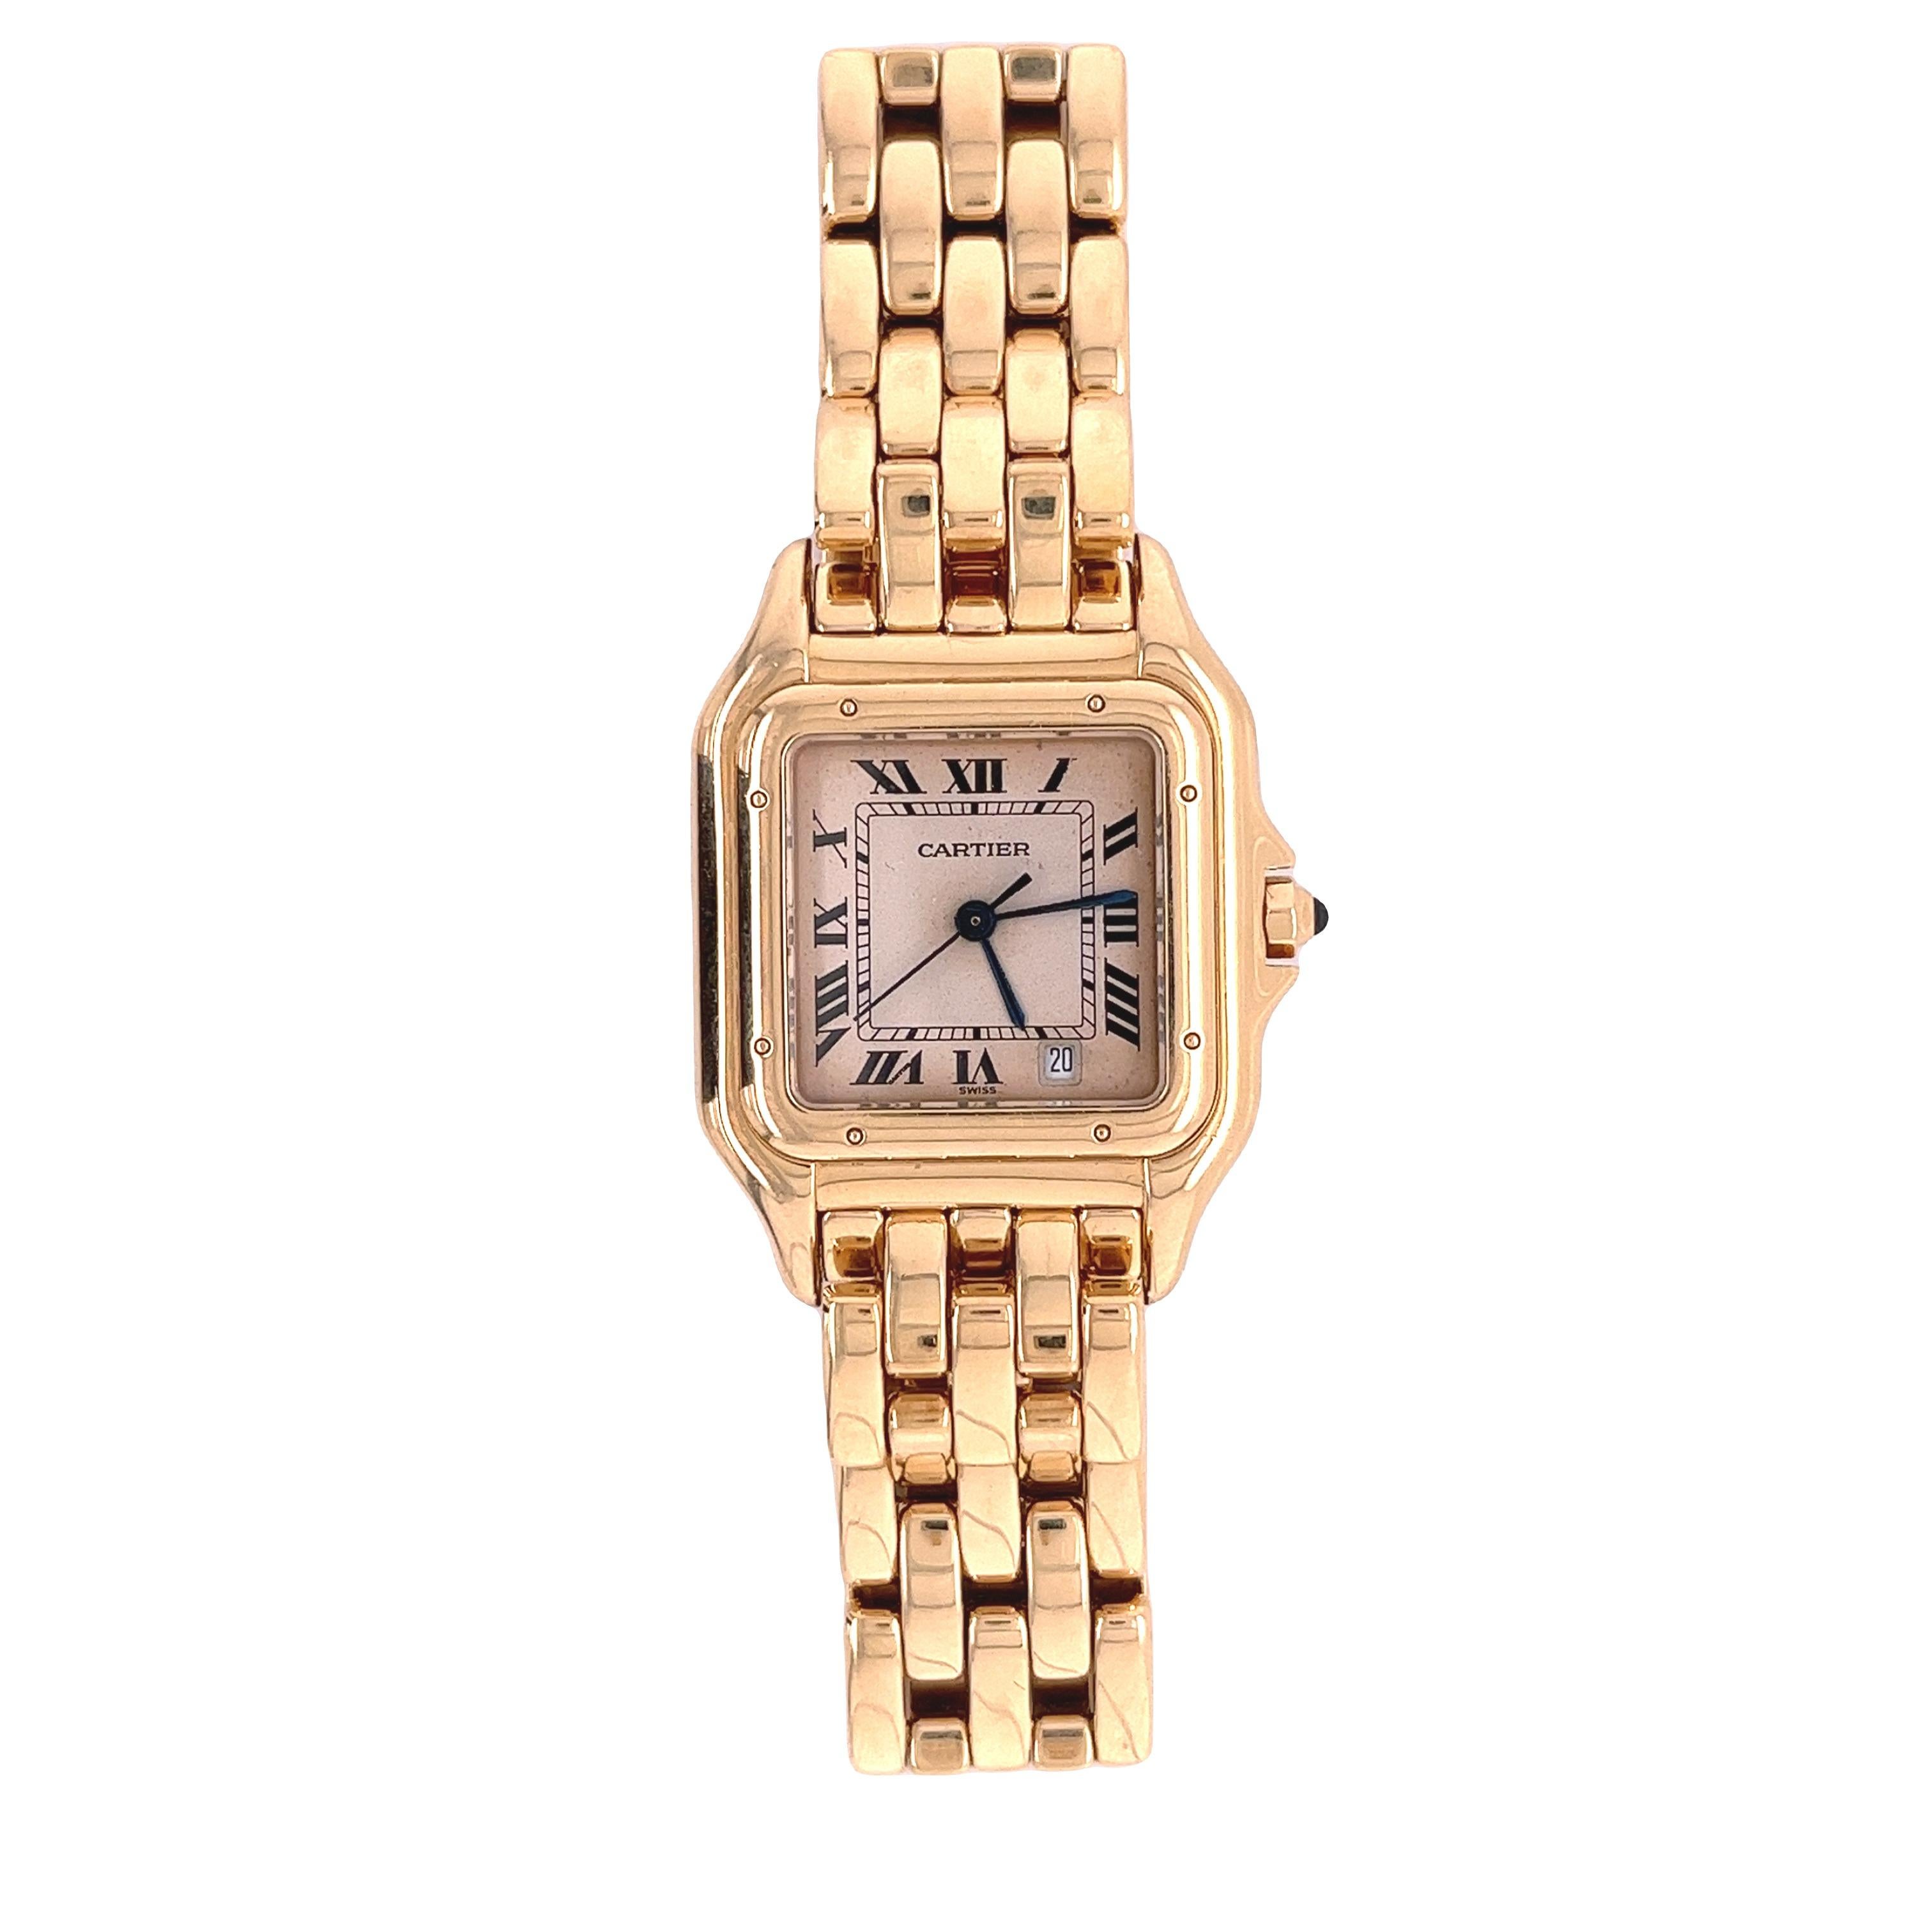 18k Cartier Panthere Model 8839 quartz wristwatch. Cream dial with Roman numerals, Swiss quartz movement. MEASUREMENTS: 67.9 dwt including works. 1-1/2